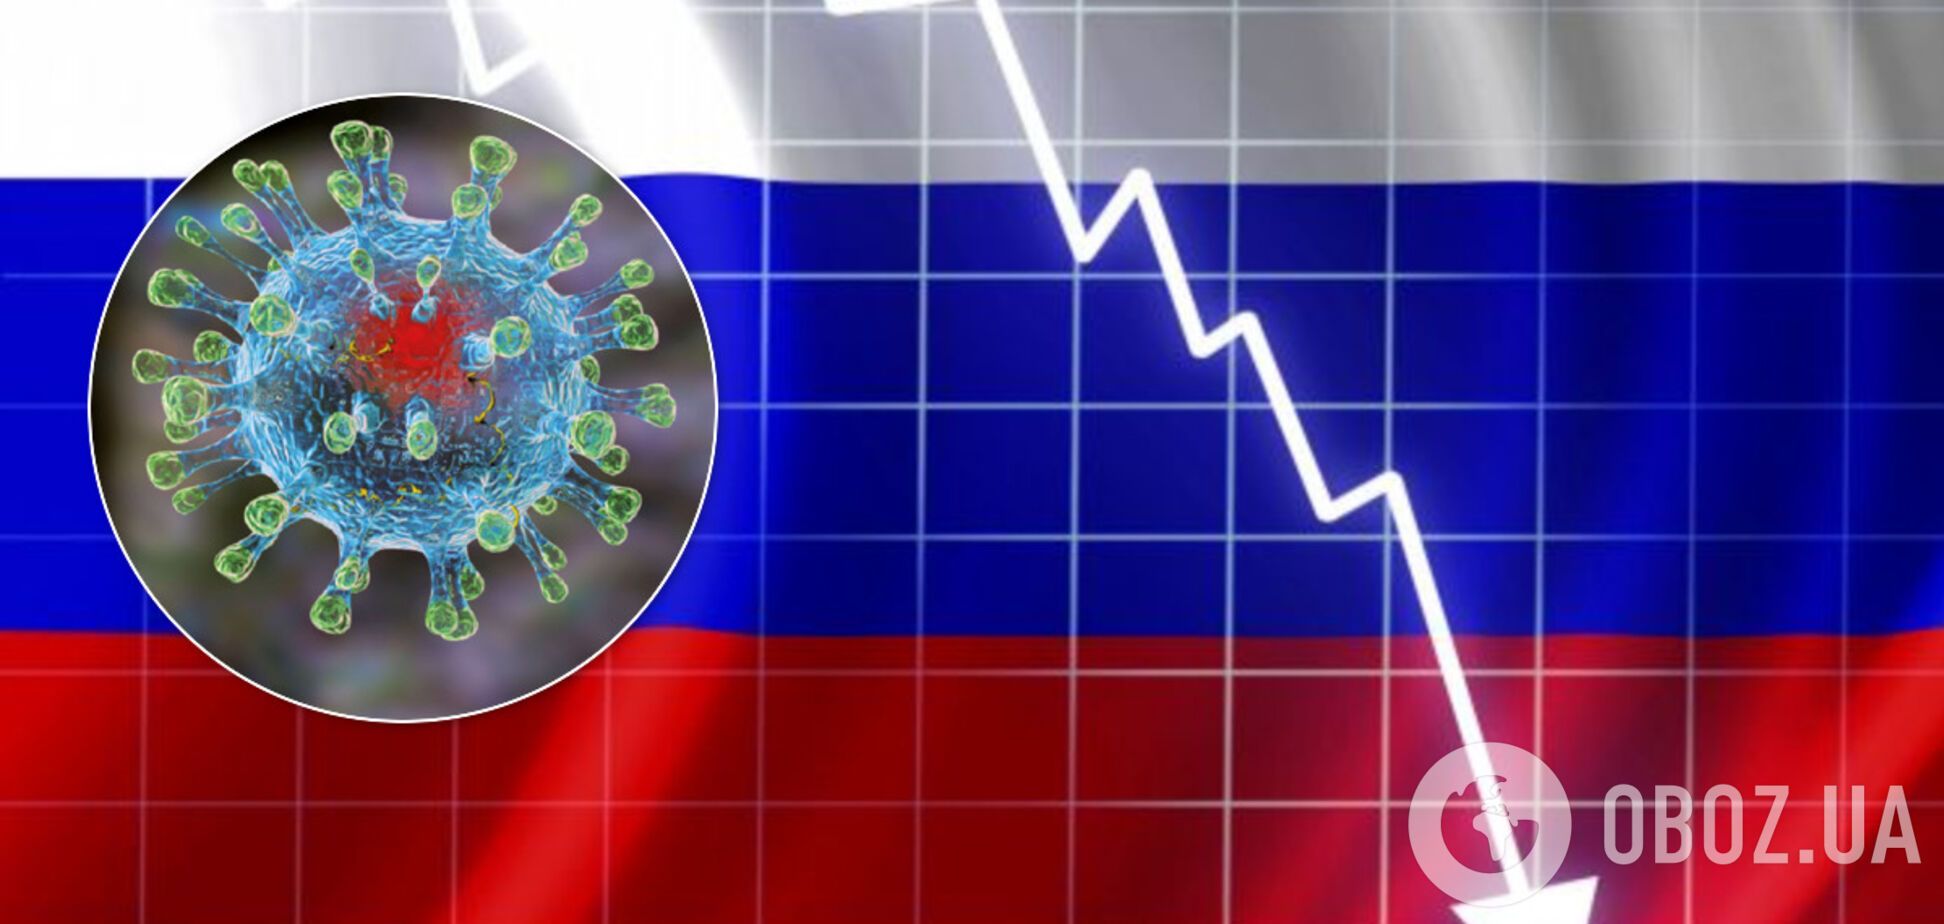 Россия призналась в потере 100 млрд в день из-за коронавируса